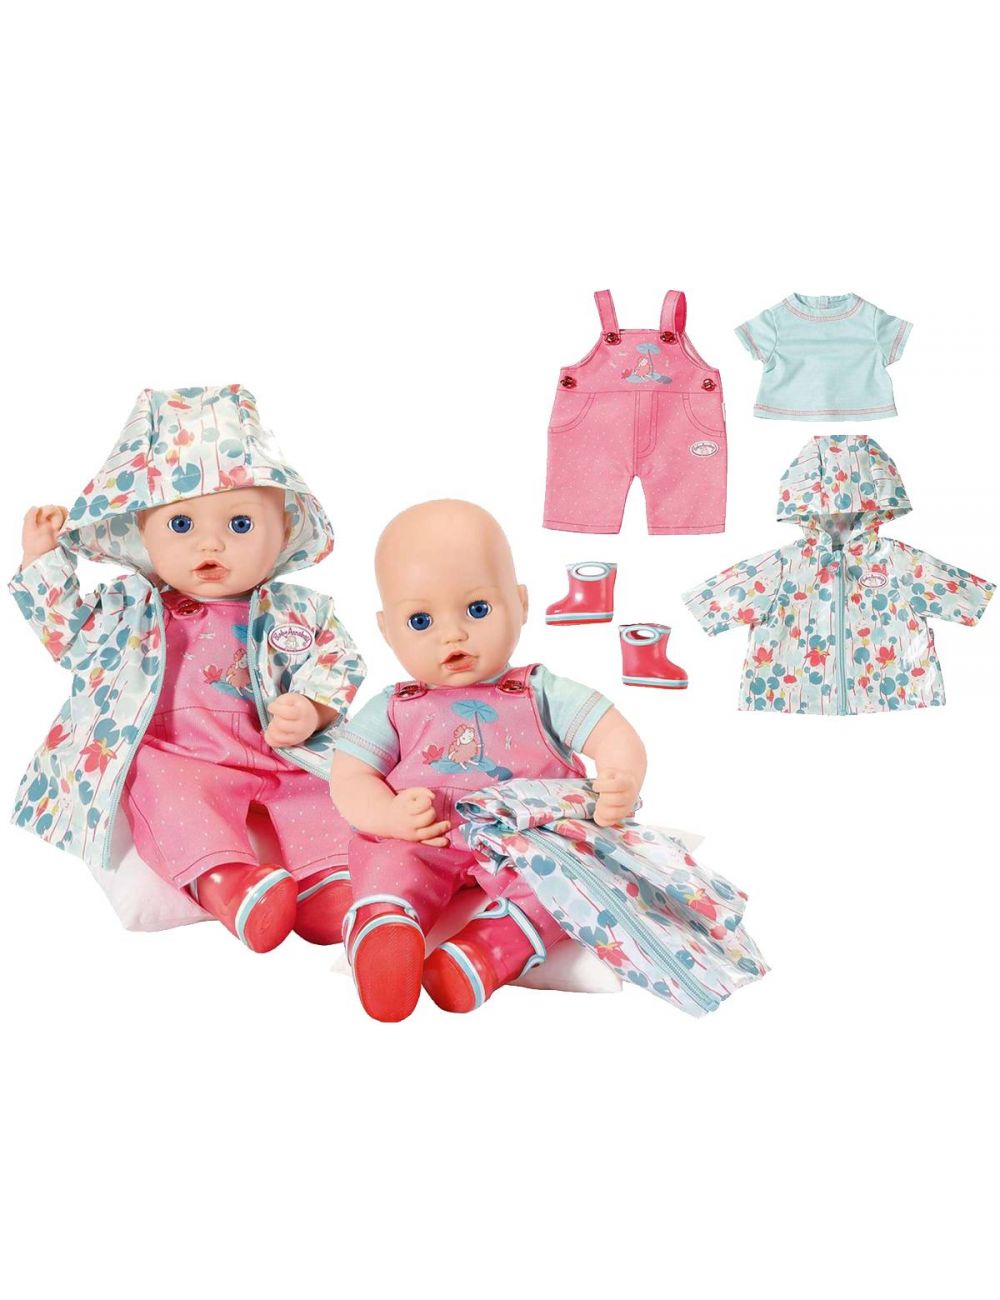 BABY Annabell Zestaw przeciwdeszczowych ubranek dla lalki 703045